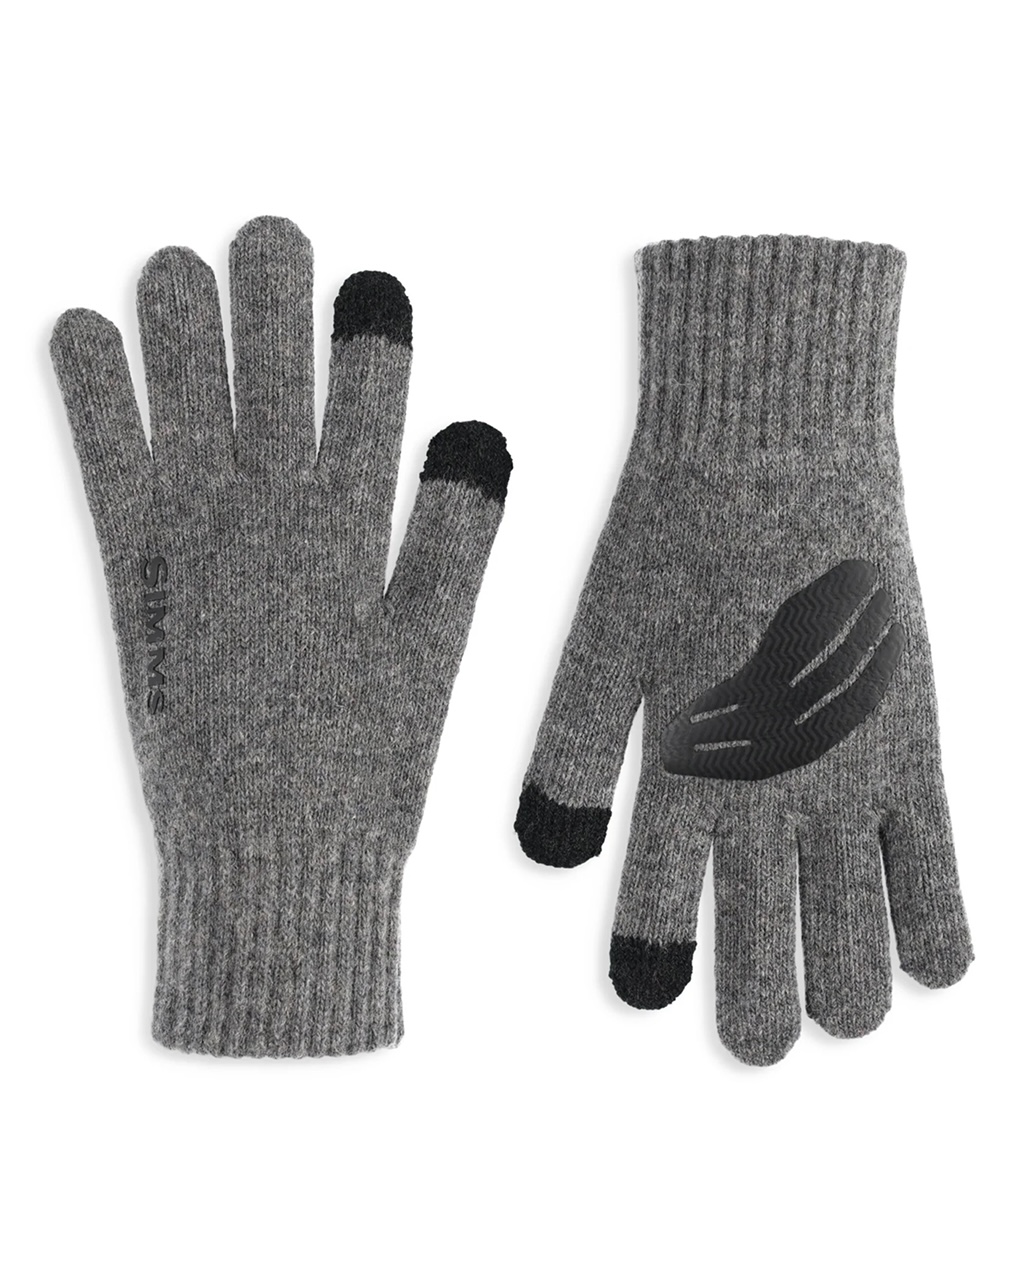 Simms Wool Full Finger Glove - L/XL